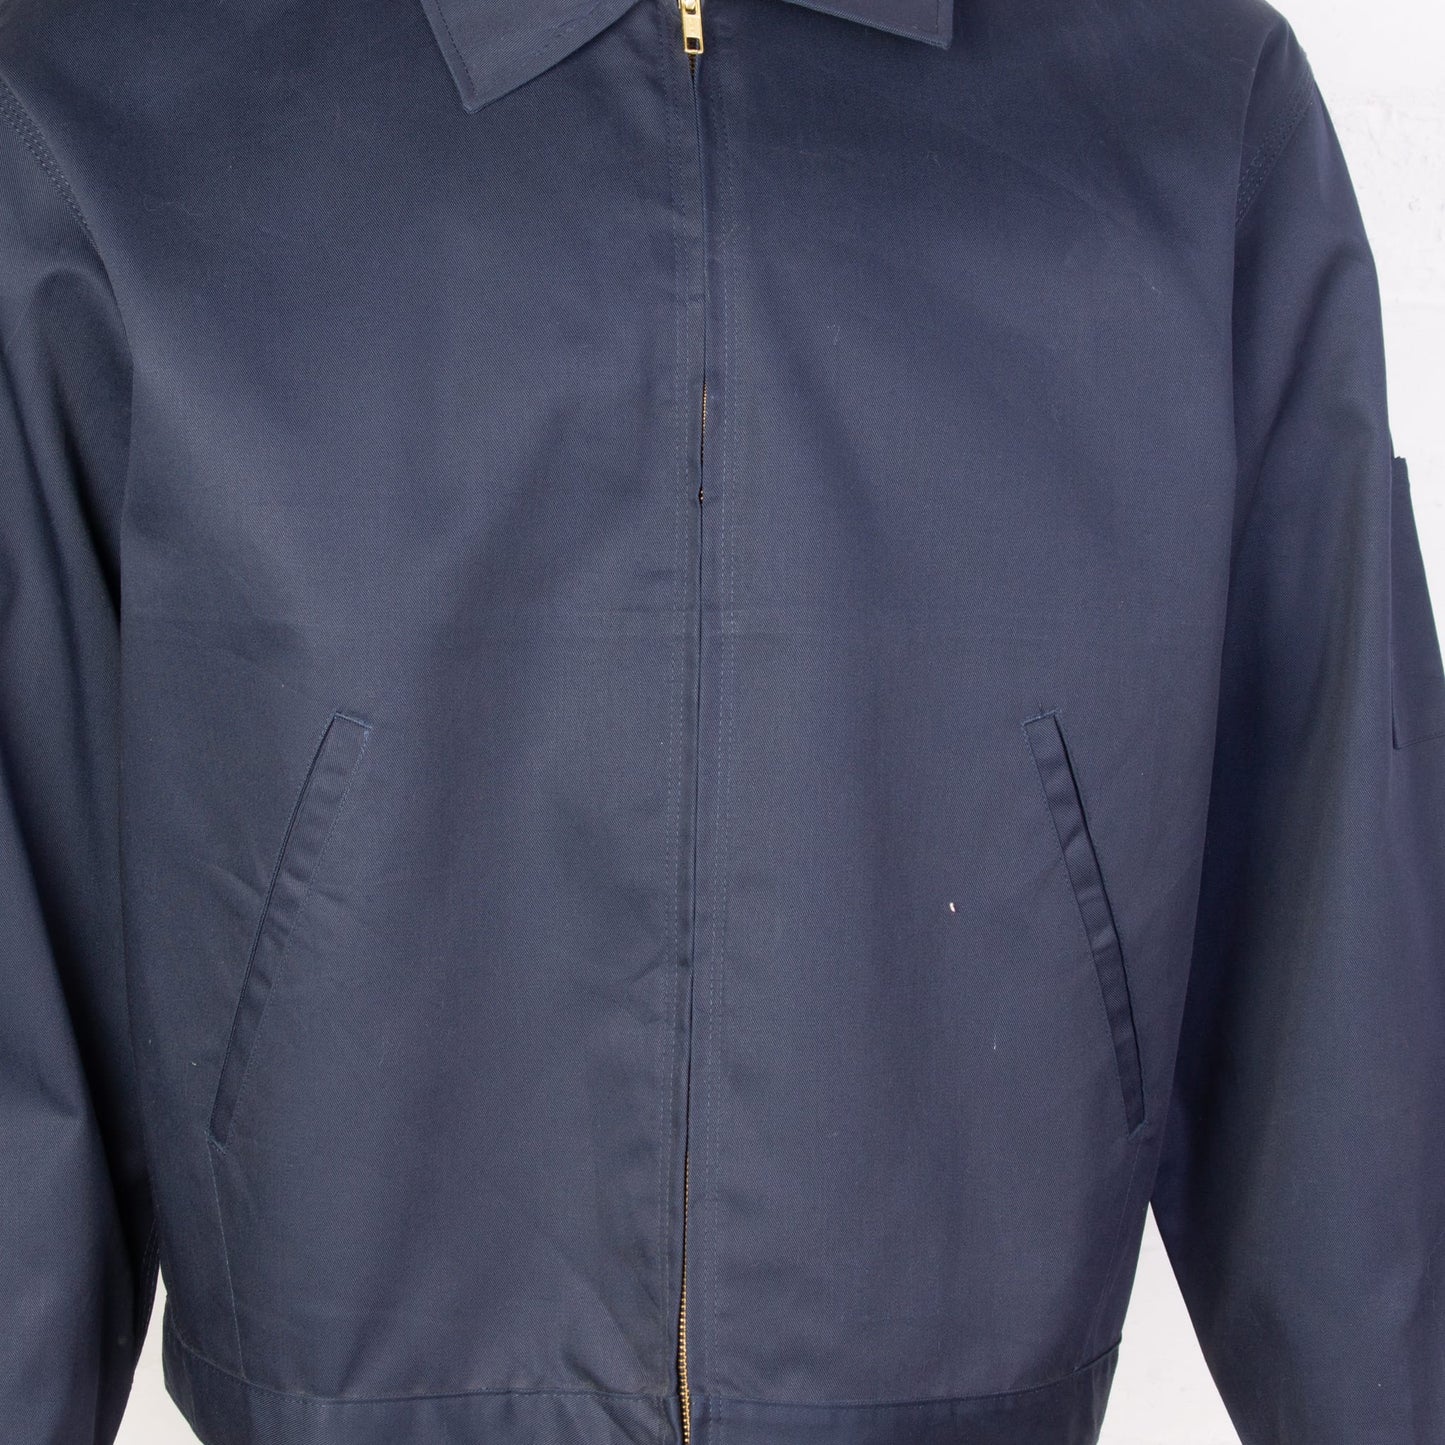 Vintage Dickies Eisenhower Workwear Jacket - Navy - American Madness